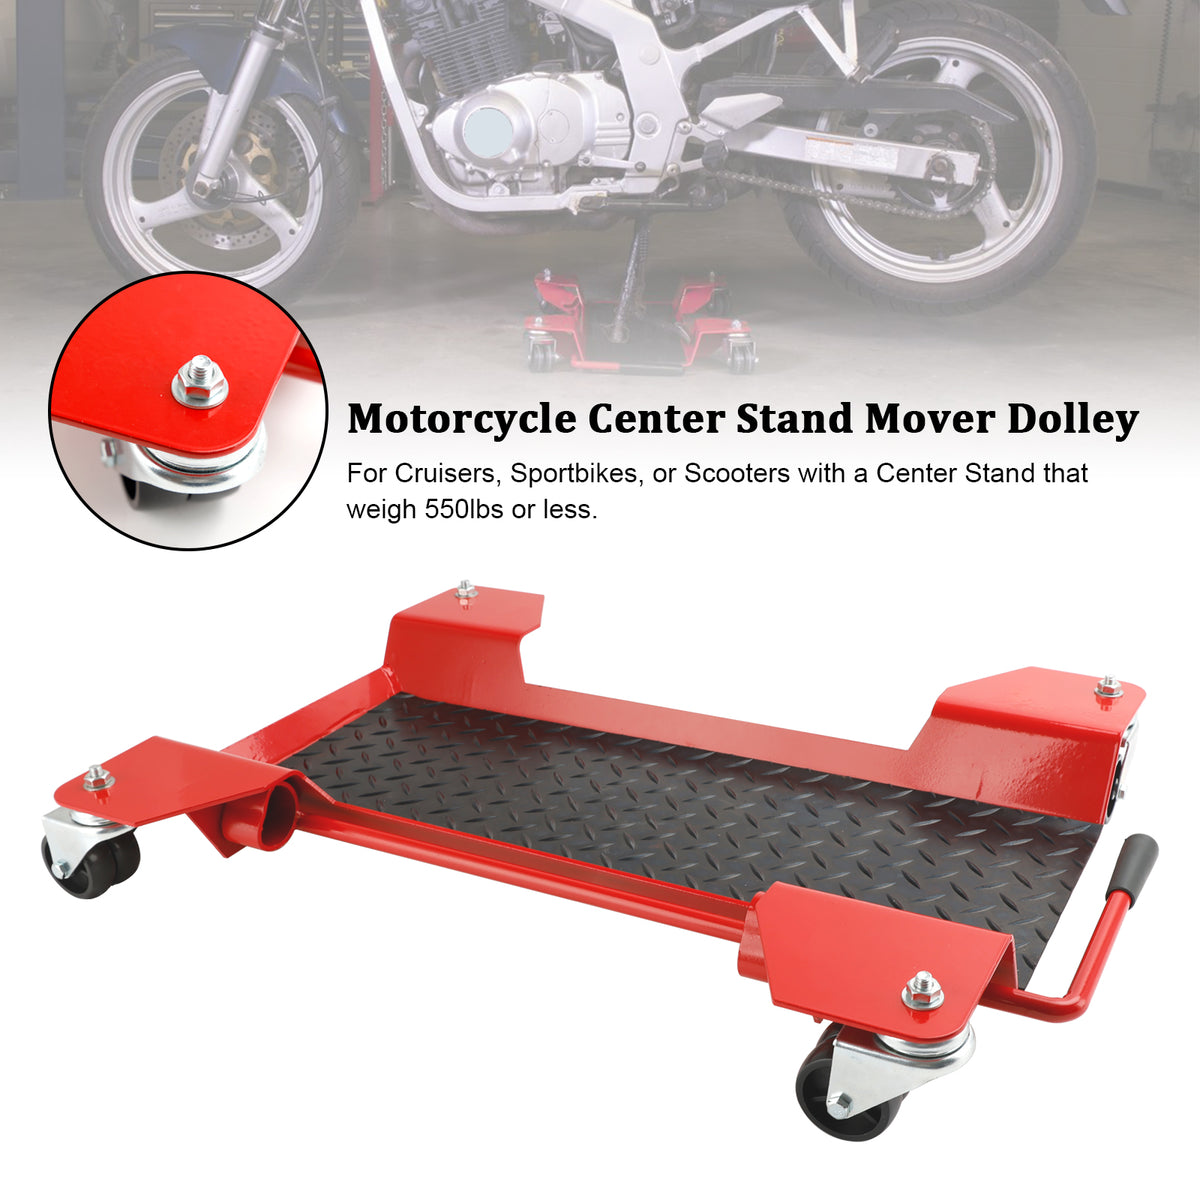 Carrello centrale per moto con piattaforma mobile per carrello con rotelle a 360 gradi, 250 kg